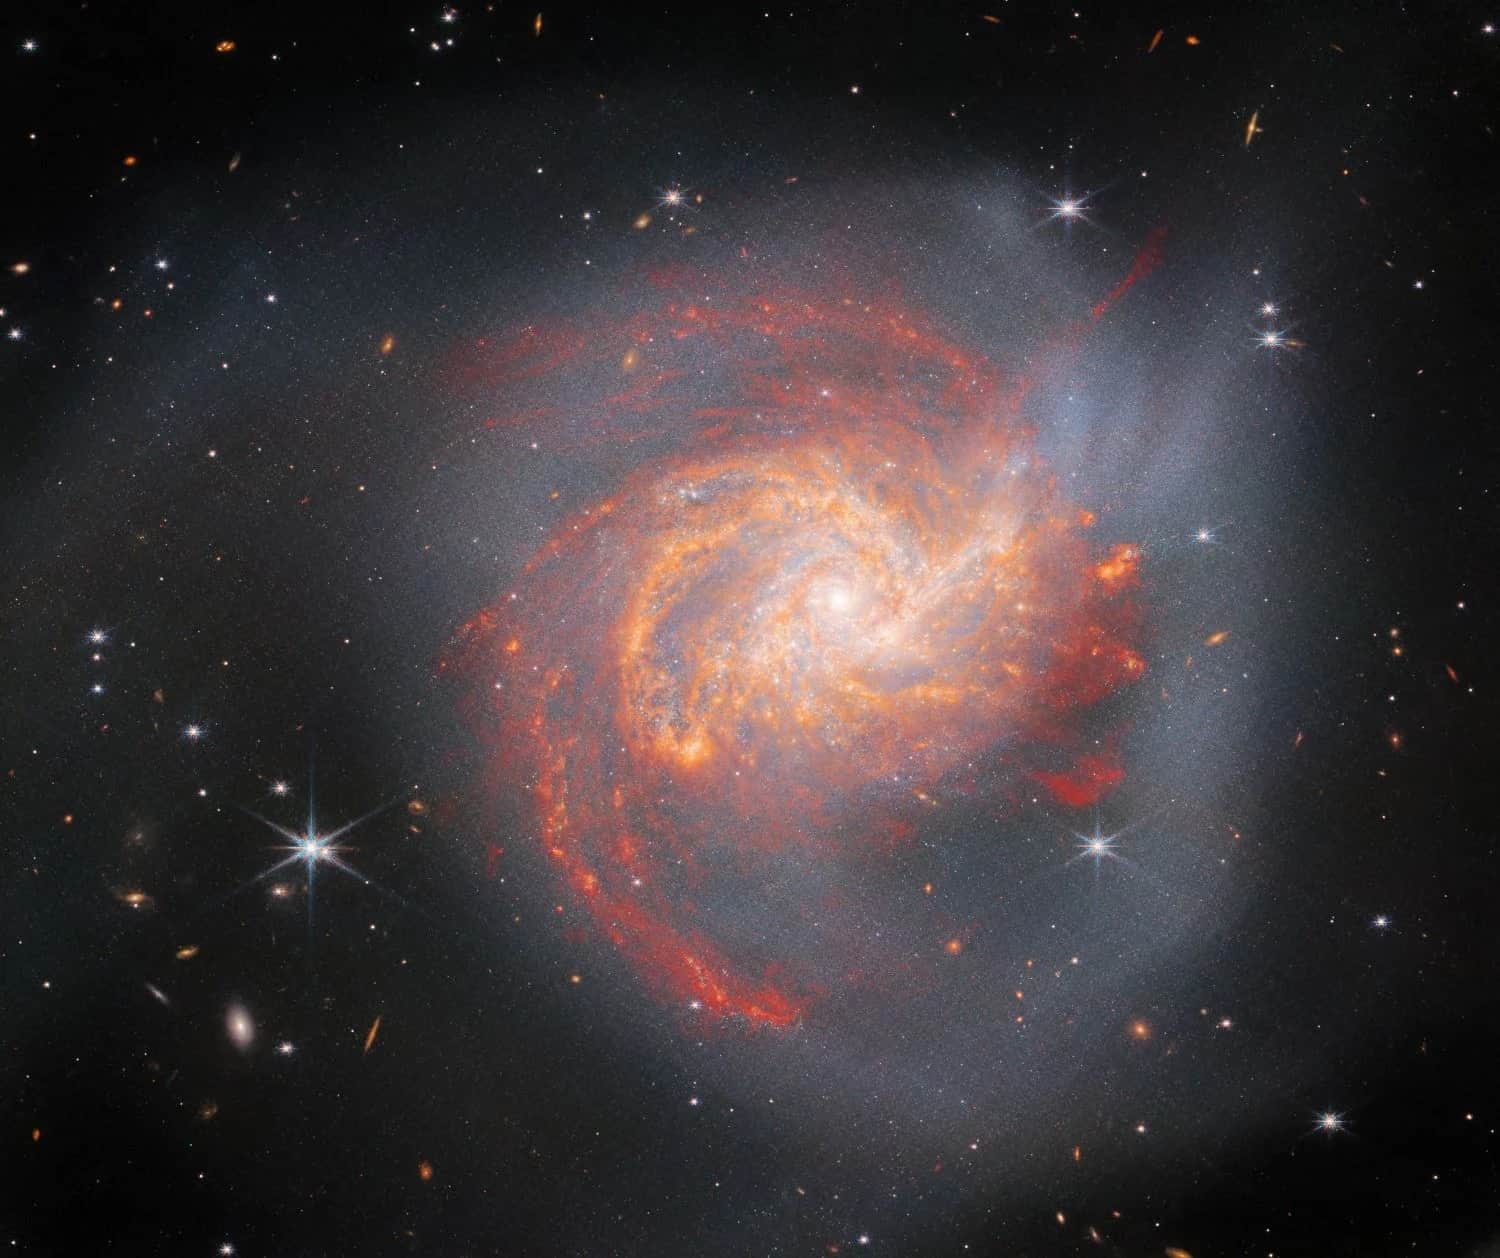 مجرة إن جي سي 3256، نُشرت الصورة في يوليو/ تموز 2023: تظهر على هذه المجرة غير المتناظرة، والتي لها حجم مجرة درب التبانة تقريباً، علامات تدل على أنها تعرضت لحدث اصطدام. يصدر خط من الغبار والنجوم عن مركزها الذي يبعد نحو 120 مليون سنة ضوئية عن الأرض، وهو عبارة عن مواد انسحبت تجاه حافتها. تتشكل النجوم الجديدة في النقاط الساطعة في الصورة بسبب حدث الاصطدام. وكالة الفضاء الأوروبية/ تلسكوب جيمس ويب، وكالة ناسا ووكالة الفضاء الكندية، إل. أرموس، أيه. إيفانز